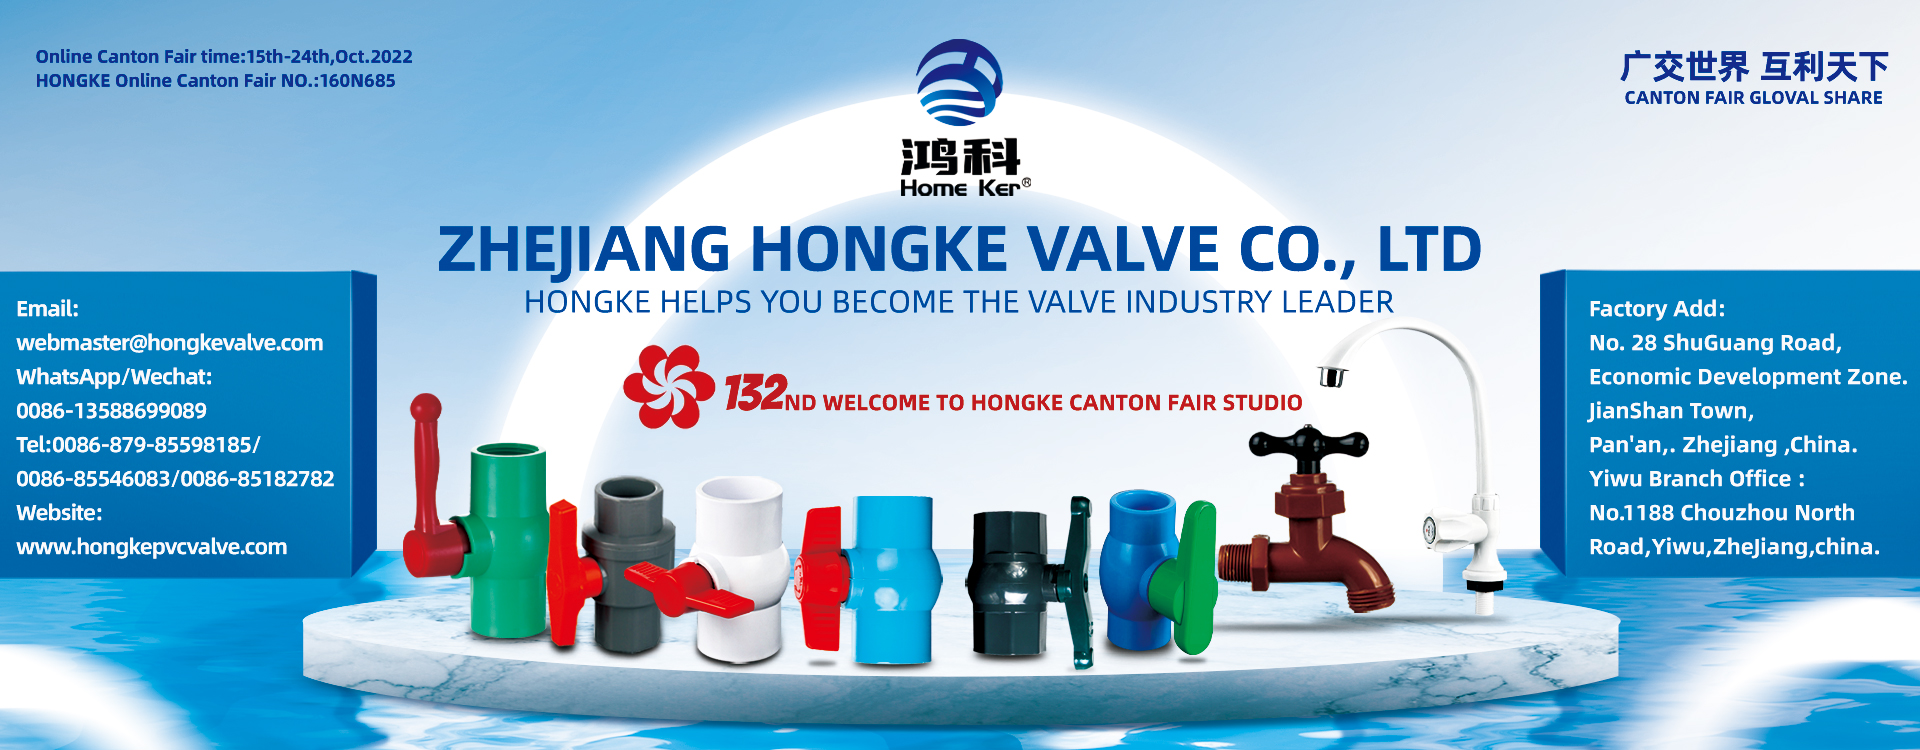 Canton fair hardware category pvc ball valve supplier